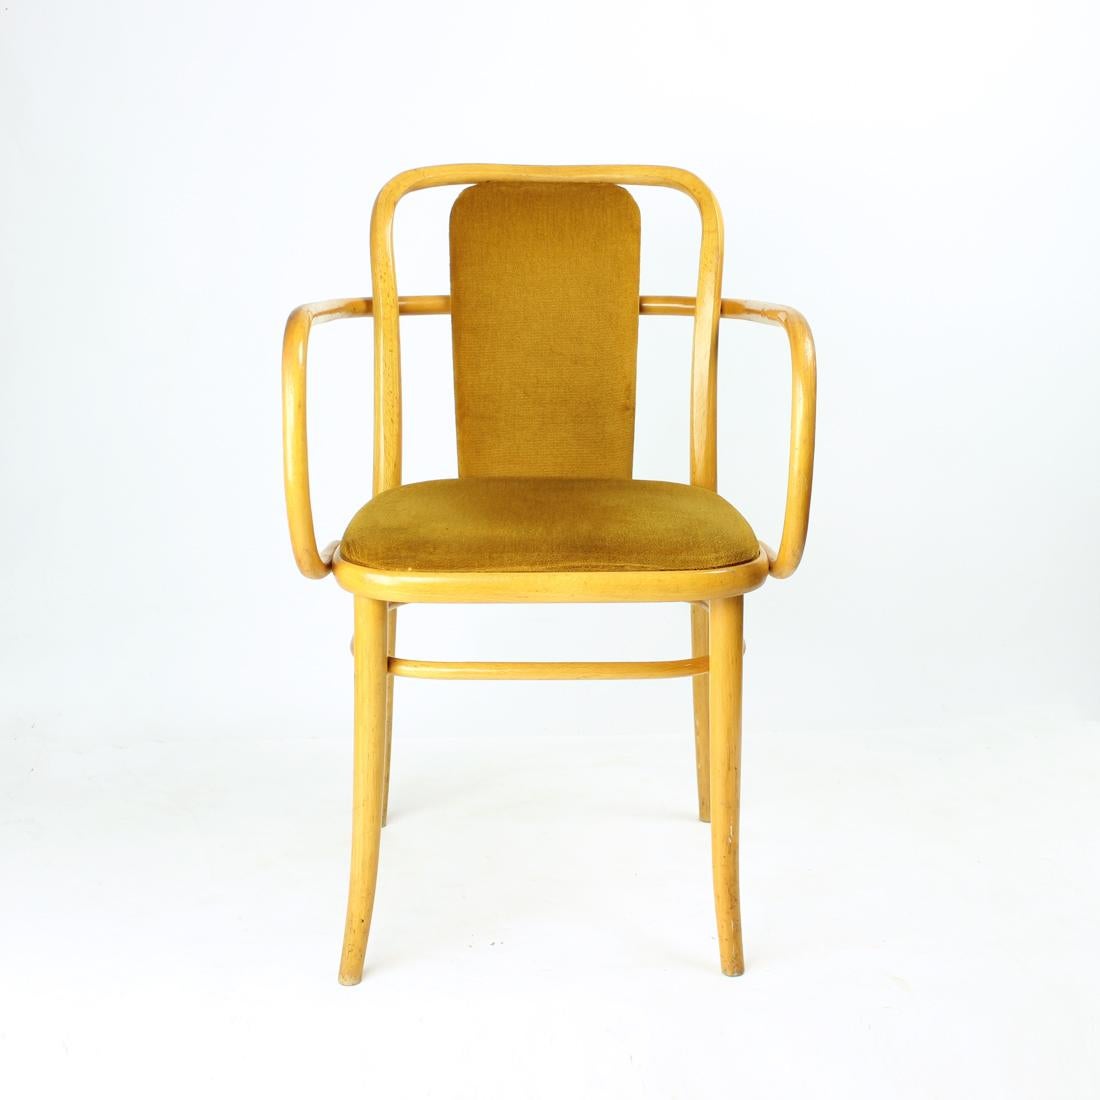 Ikonischer und eleganter Sessel, hergestellt von TON in der Tschechischen Republik in den 1930er Jahren. Bei diesem Stuhl handelt es sich um eine Variante des klassischen Thonet Hoffman Stuhls Modell '811'. Hergestellt aus blondem Eichenholz